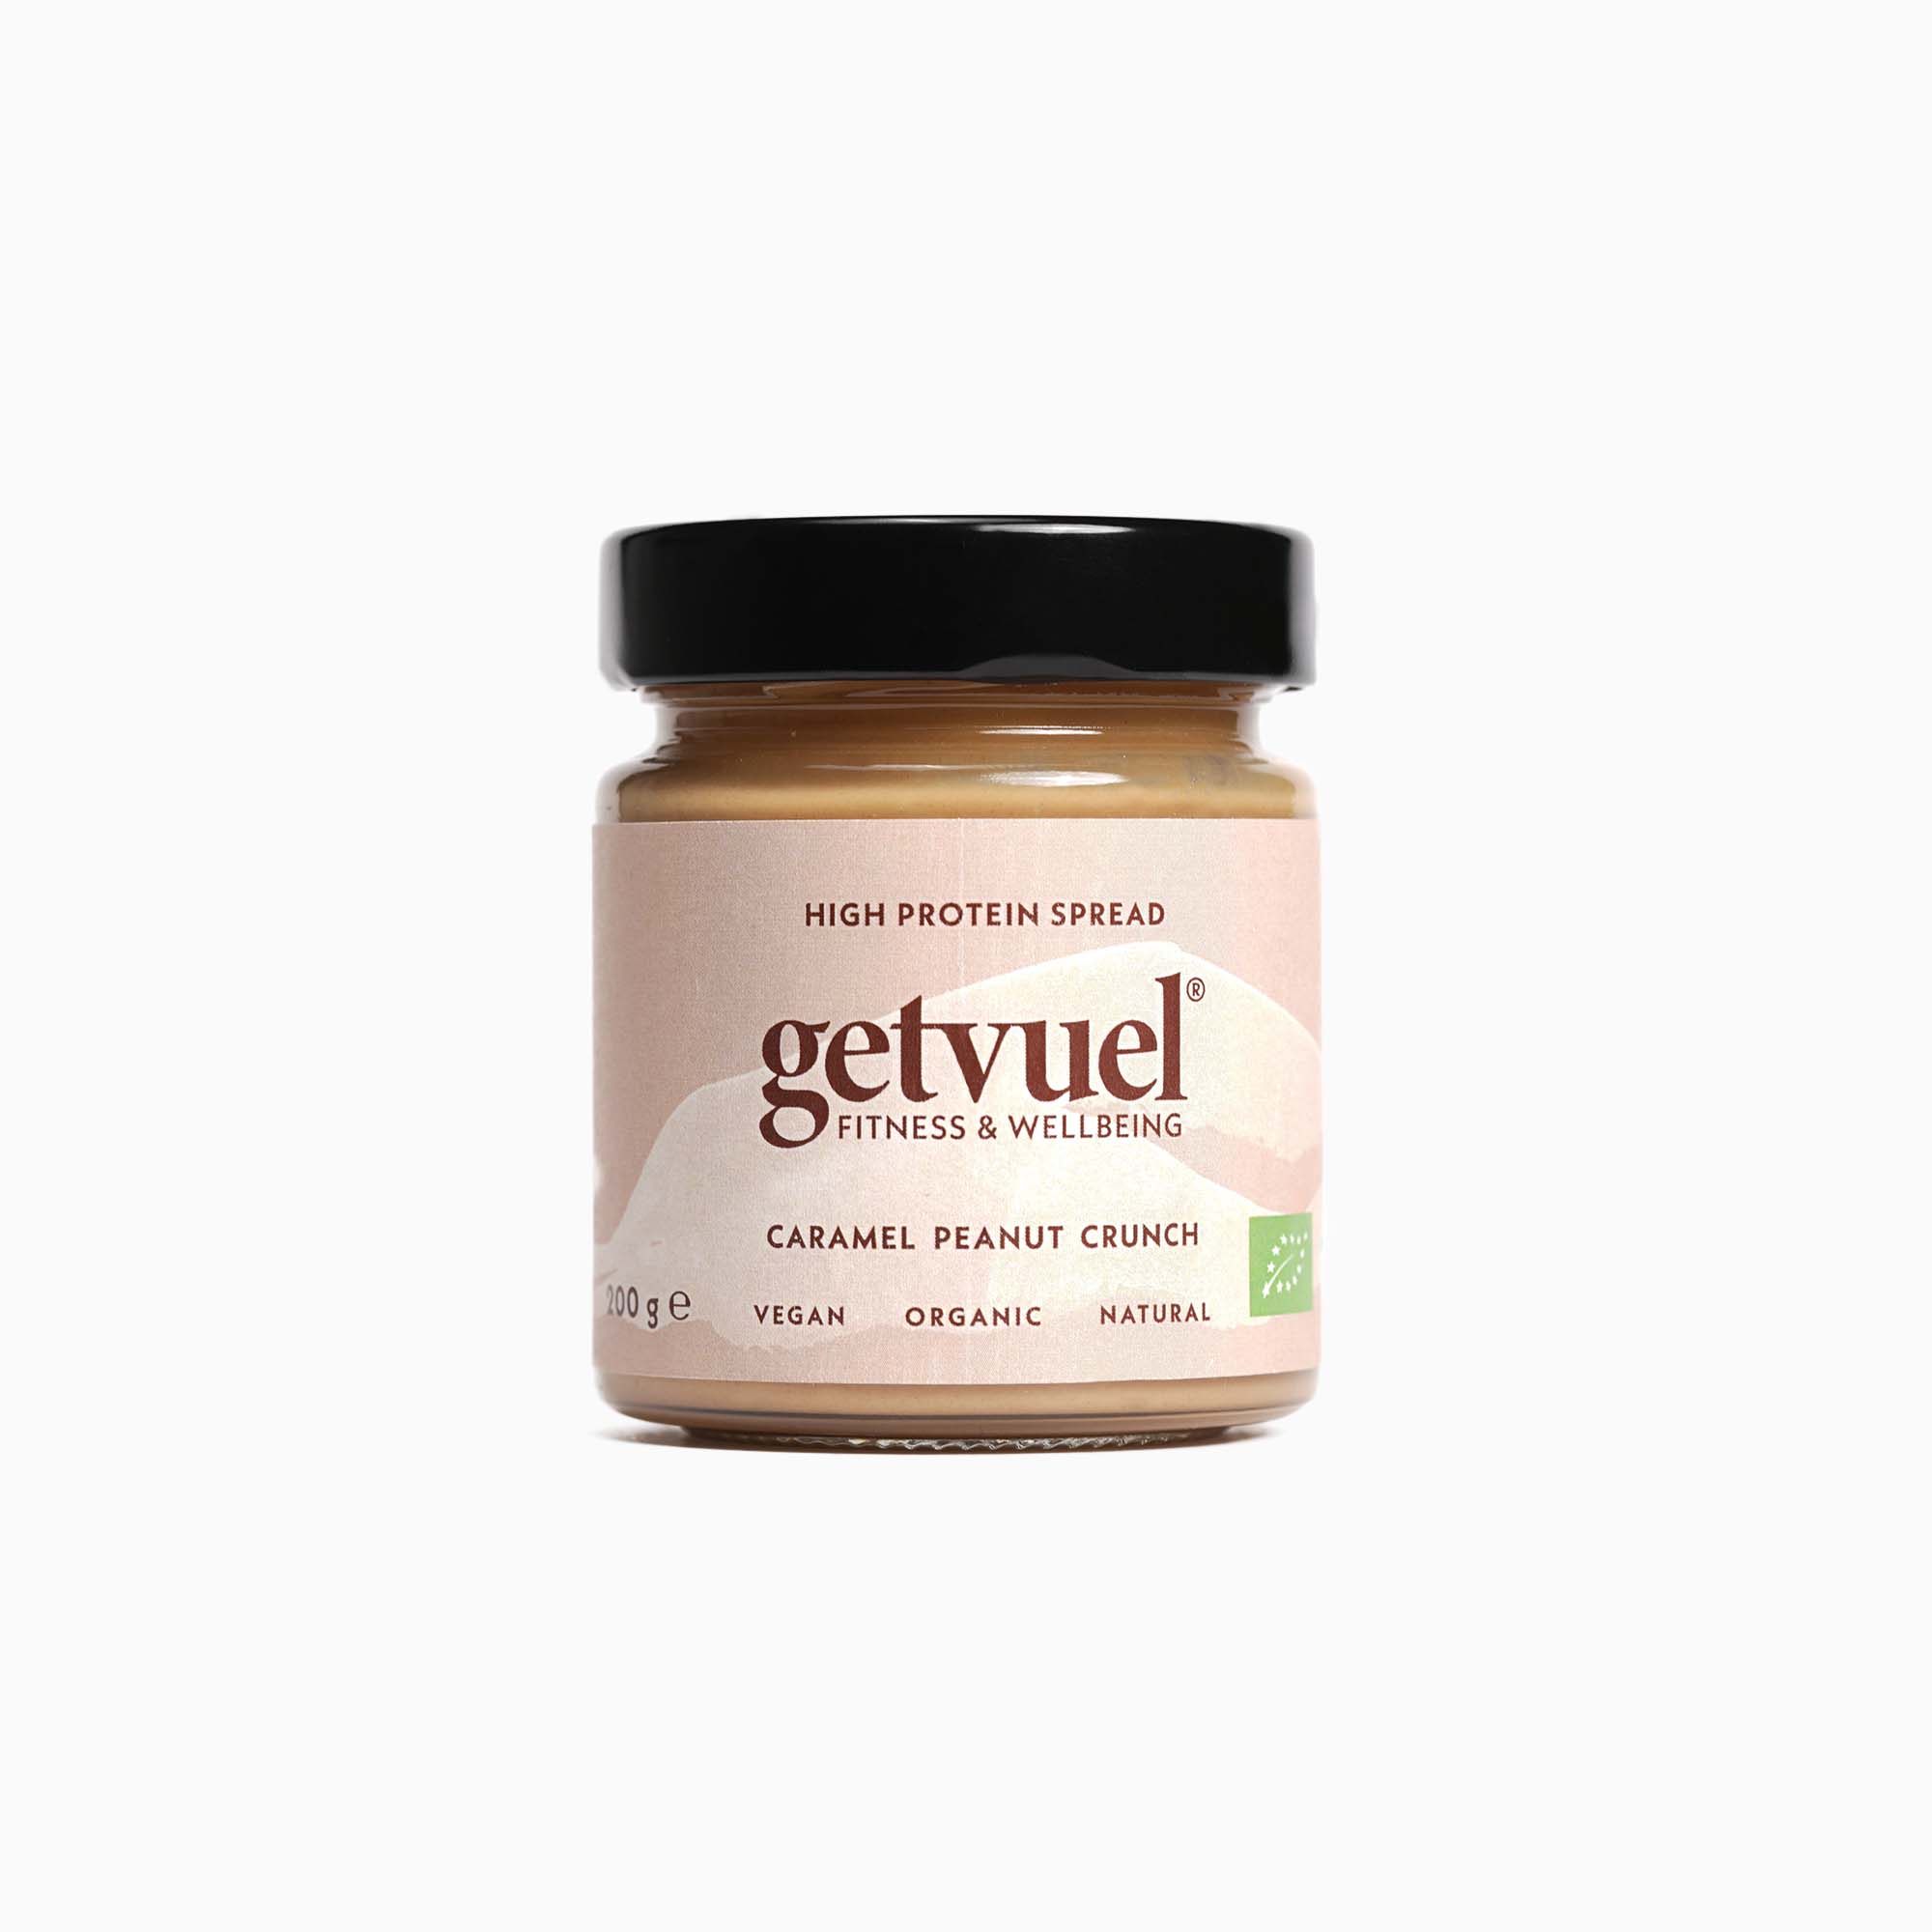 Bio - Caramel Peanut Crunch High Protein Spread (NEUE REZEPTUR)